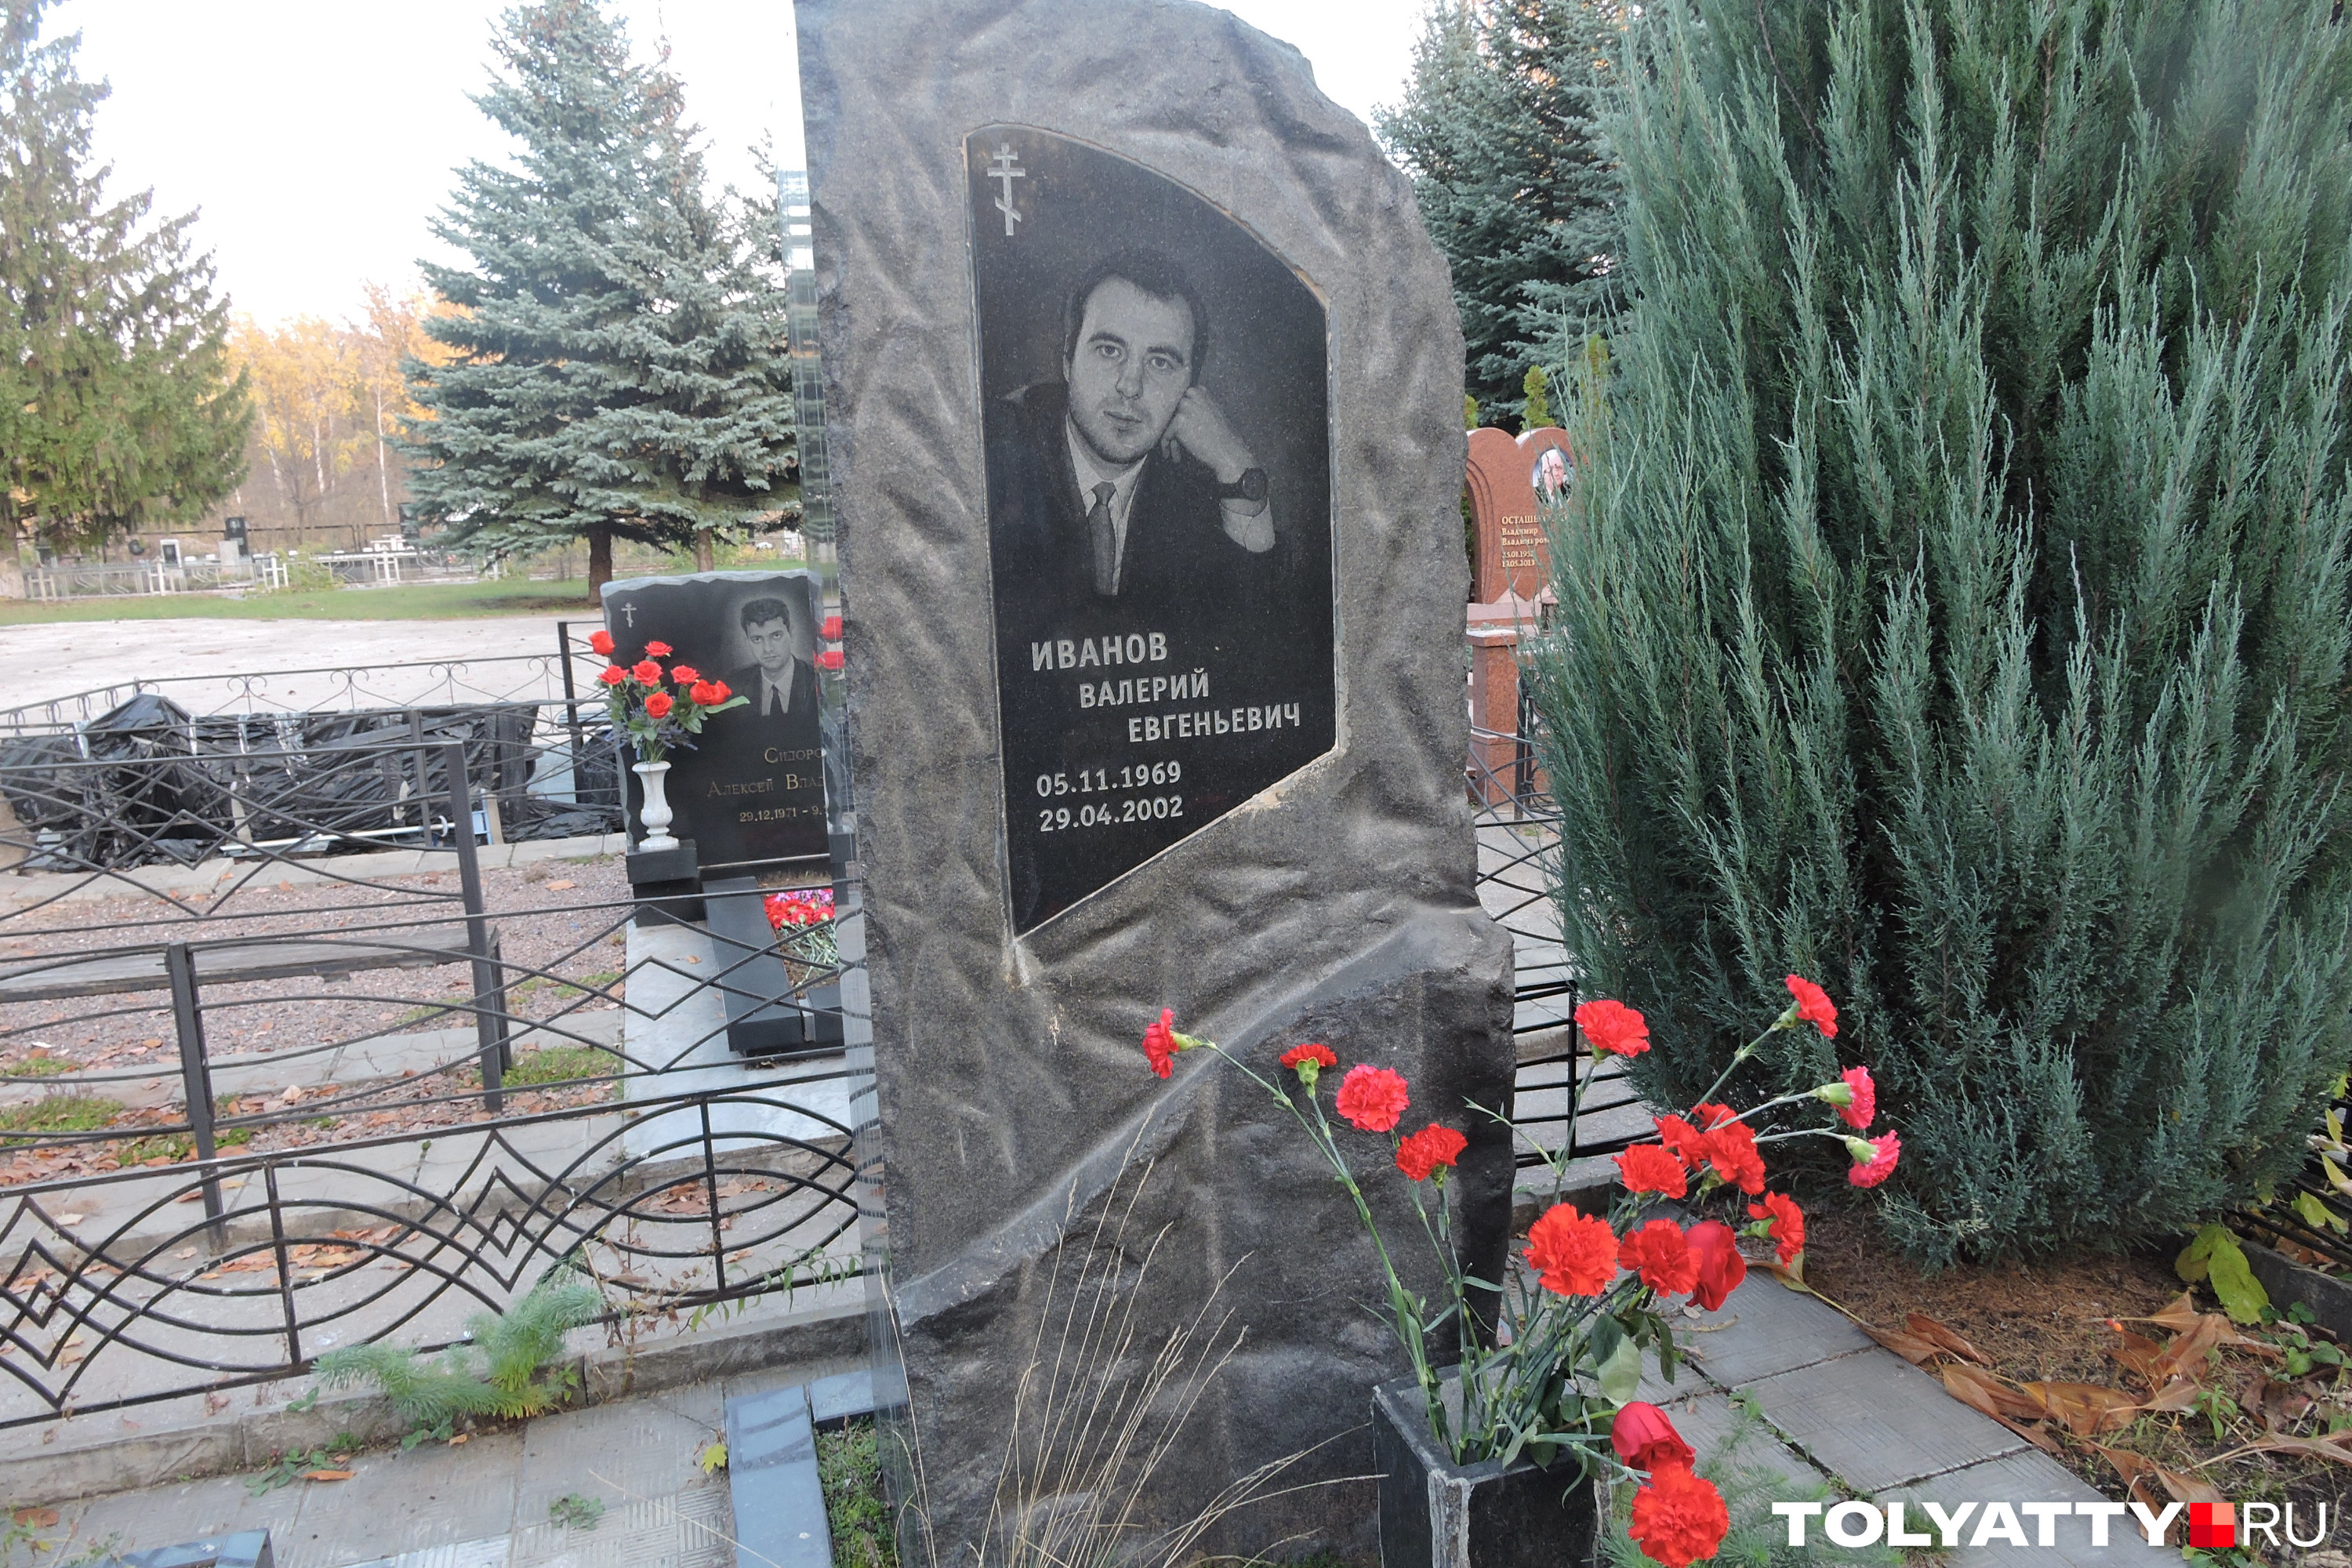 Валерий Иванов Тольяттинское обозрение похороны